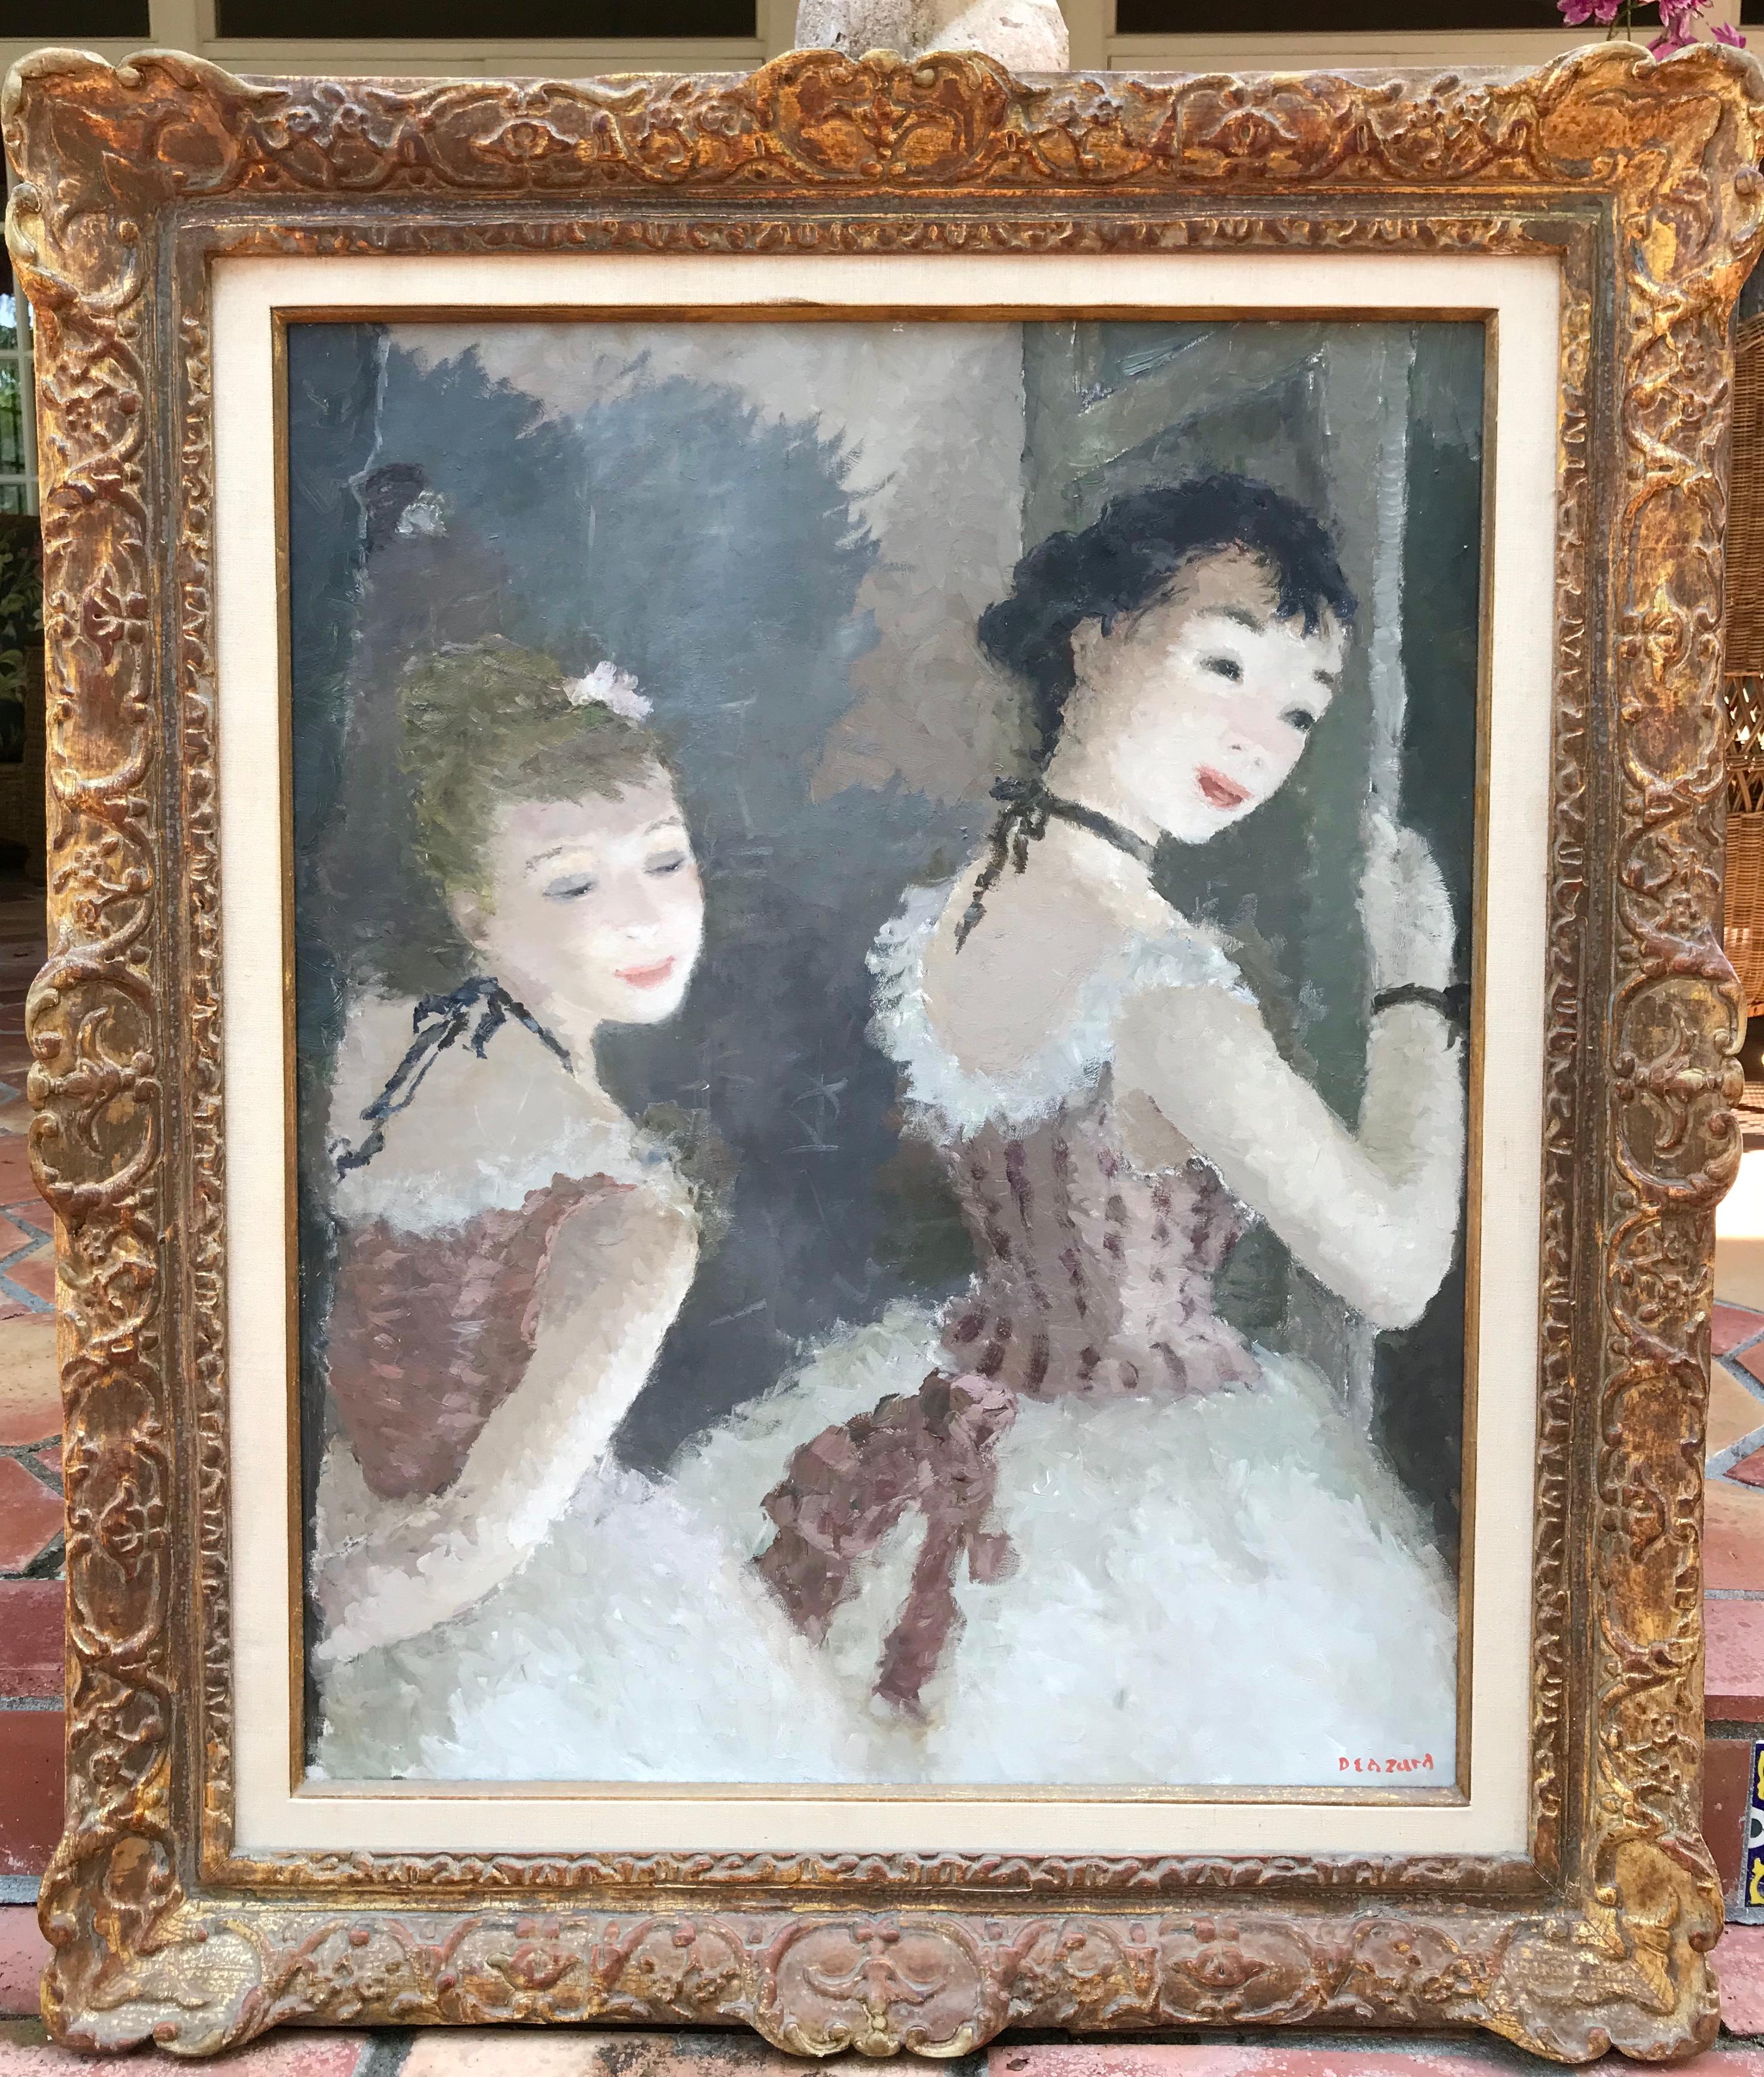 Voici pour votre considération une magnifique peinture à l'huile originale de deux ballerines attendant de monter sur scène par l'artiste français Dietz Edward.  Exécuté de manière exquise par un maître artiste.  Signature de l'artiste en bas à